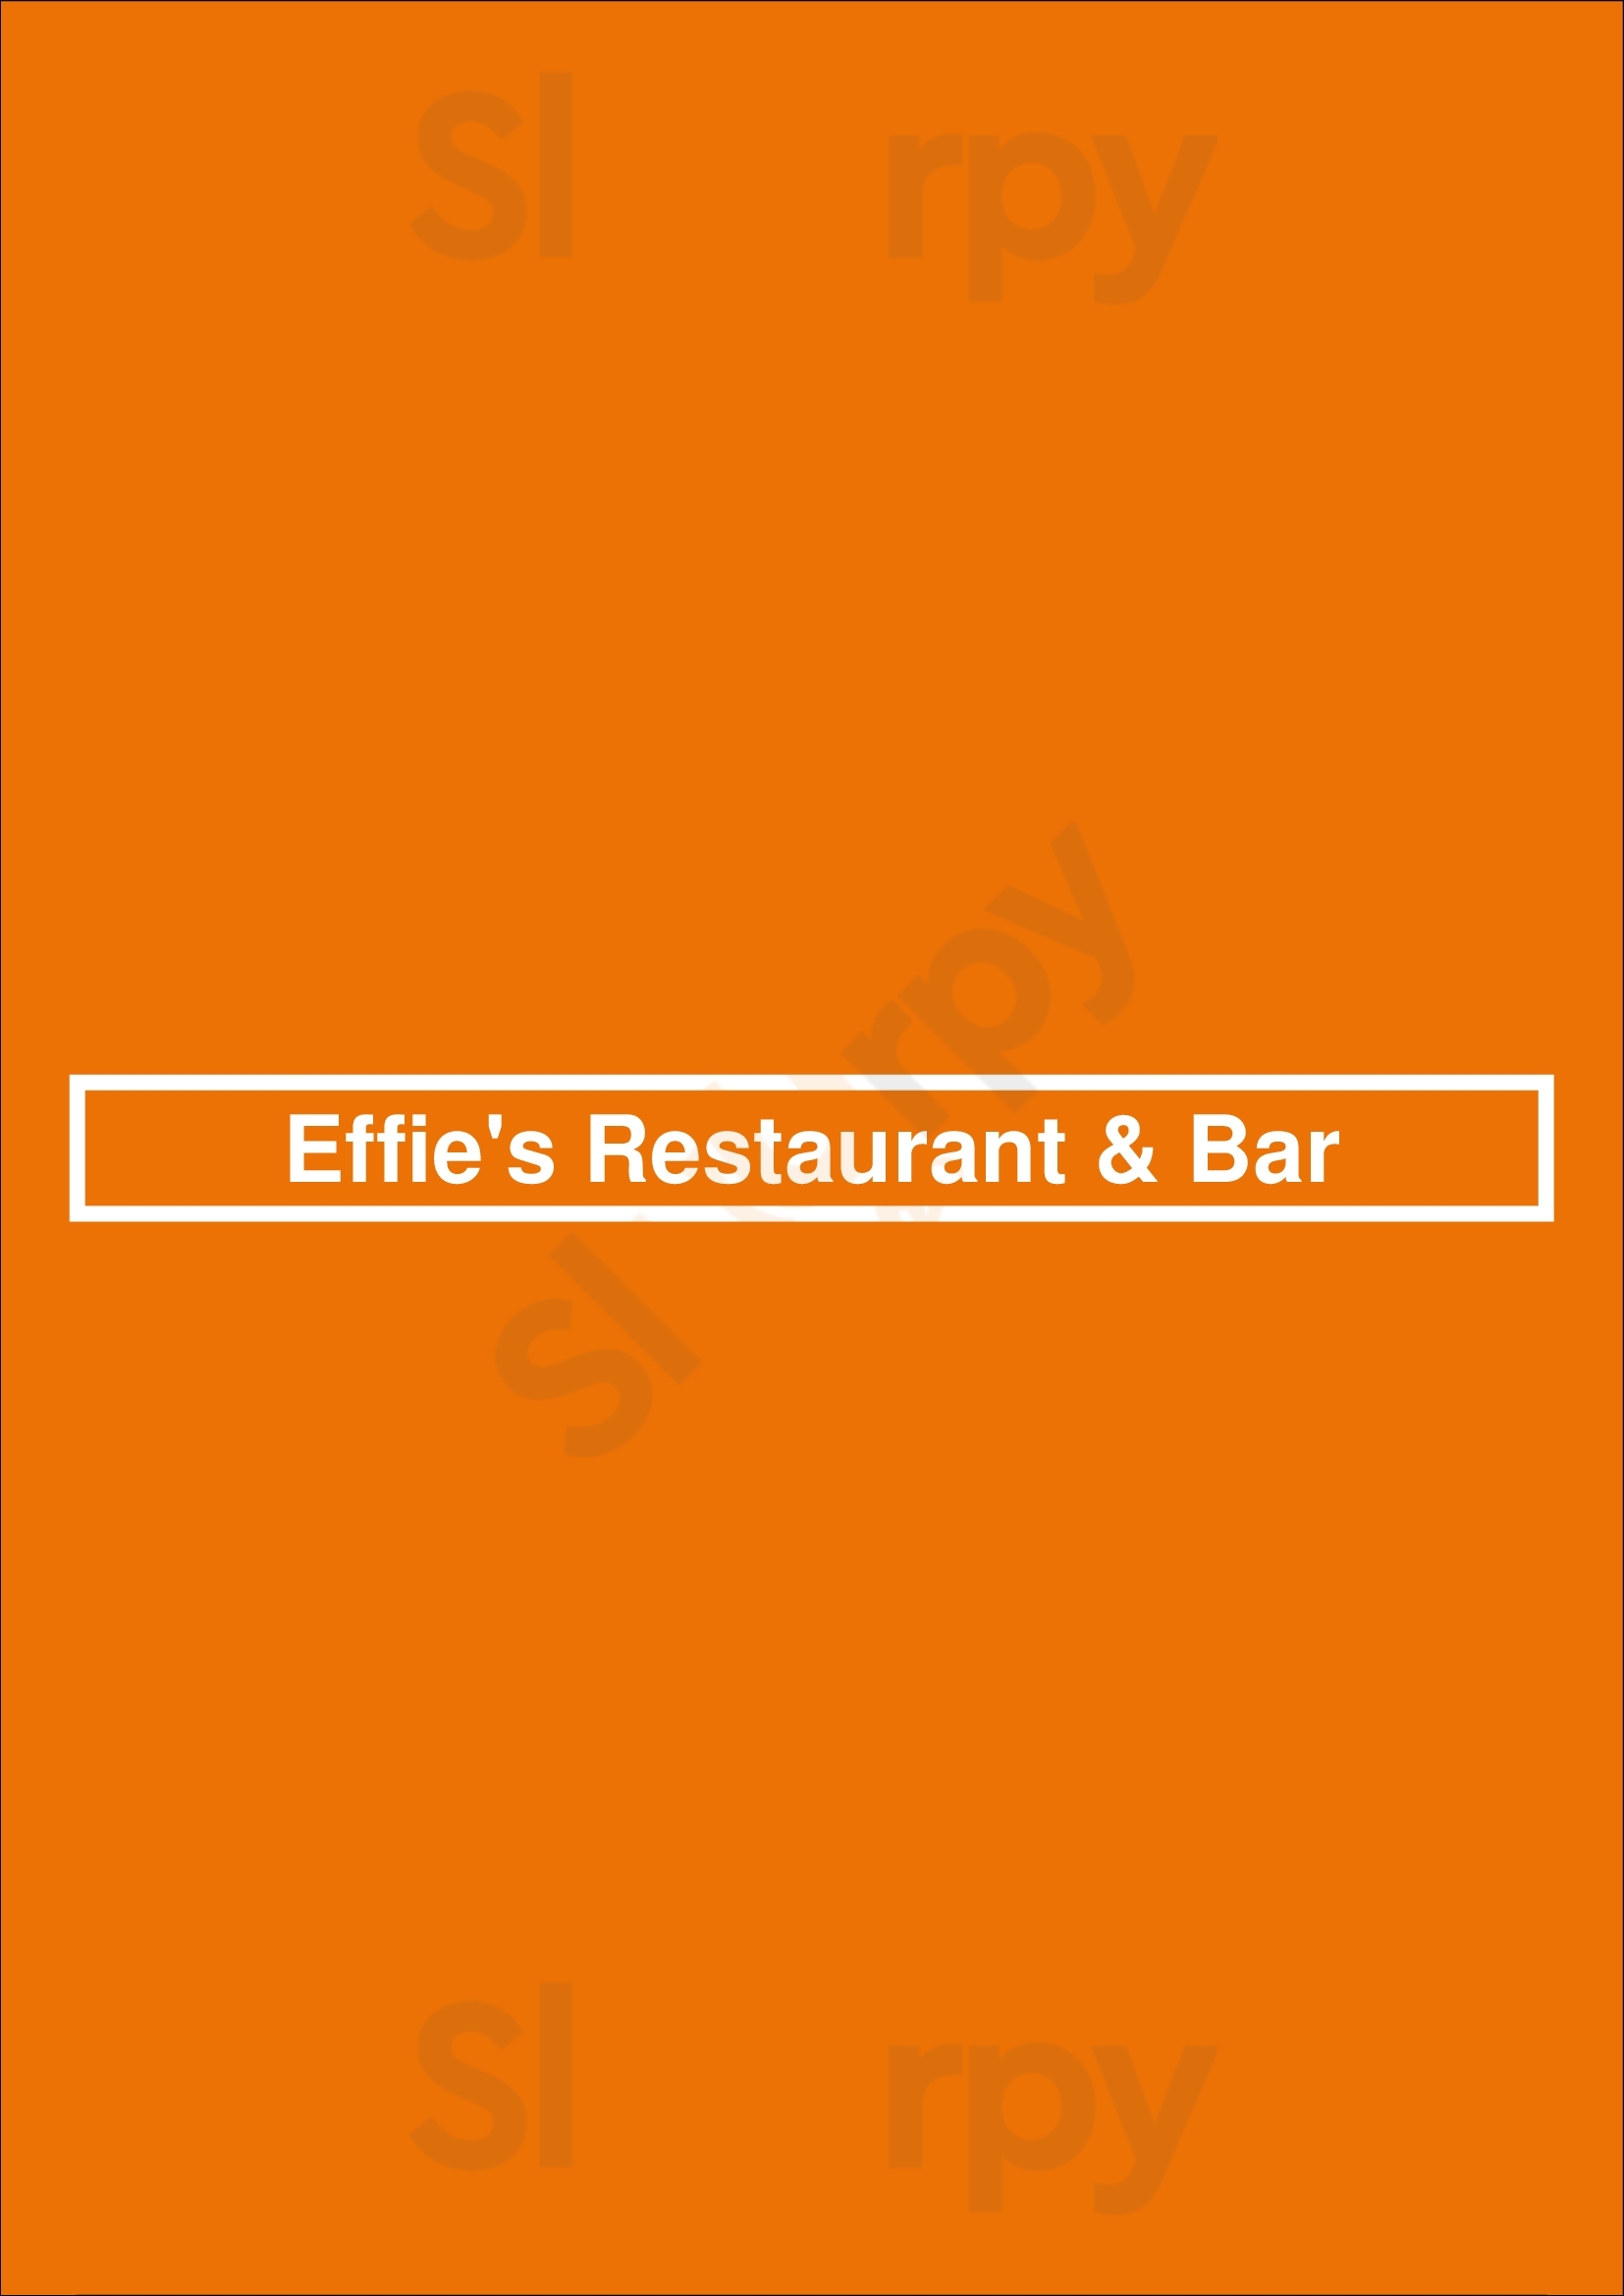 Effie's Restaurant & Bar Campbell Menu - 1